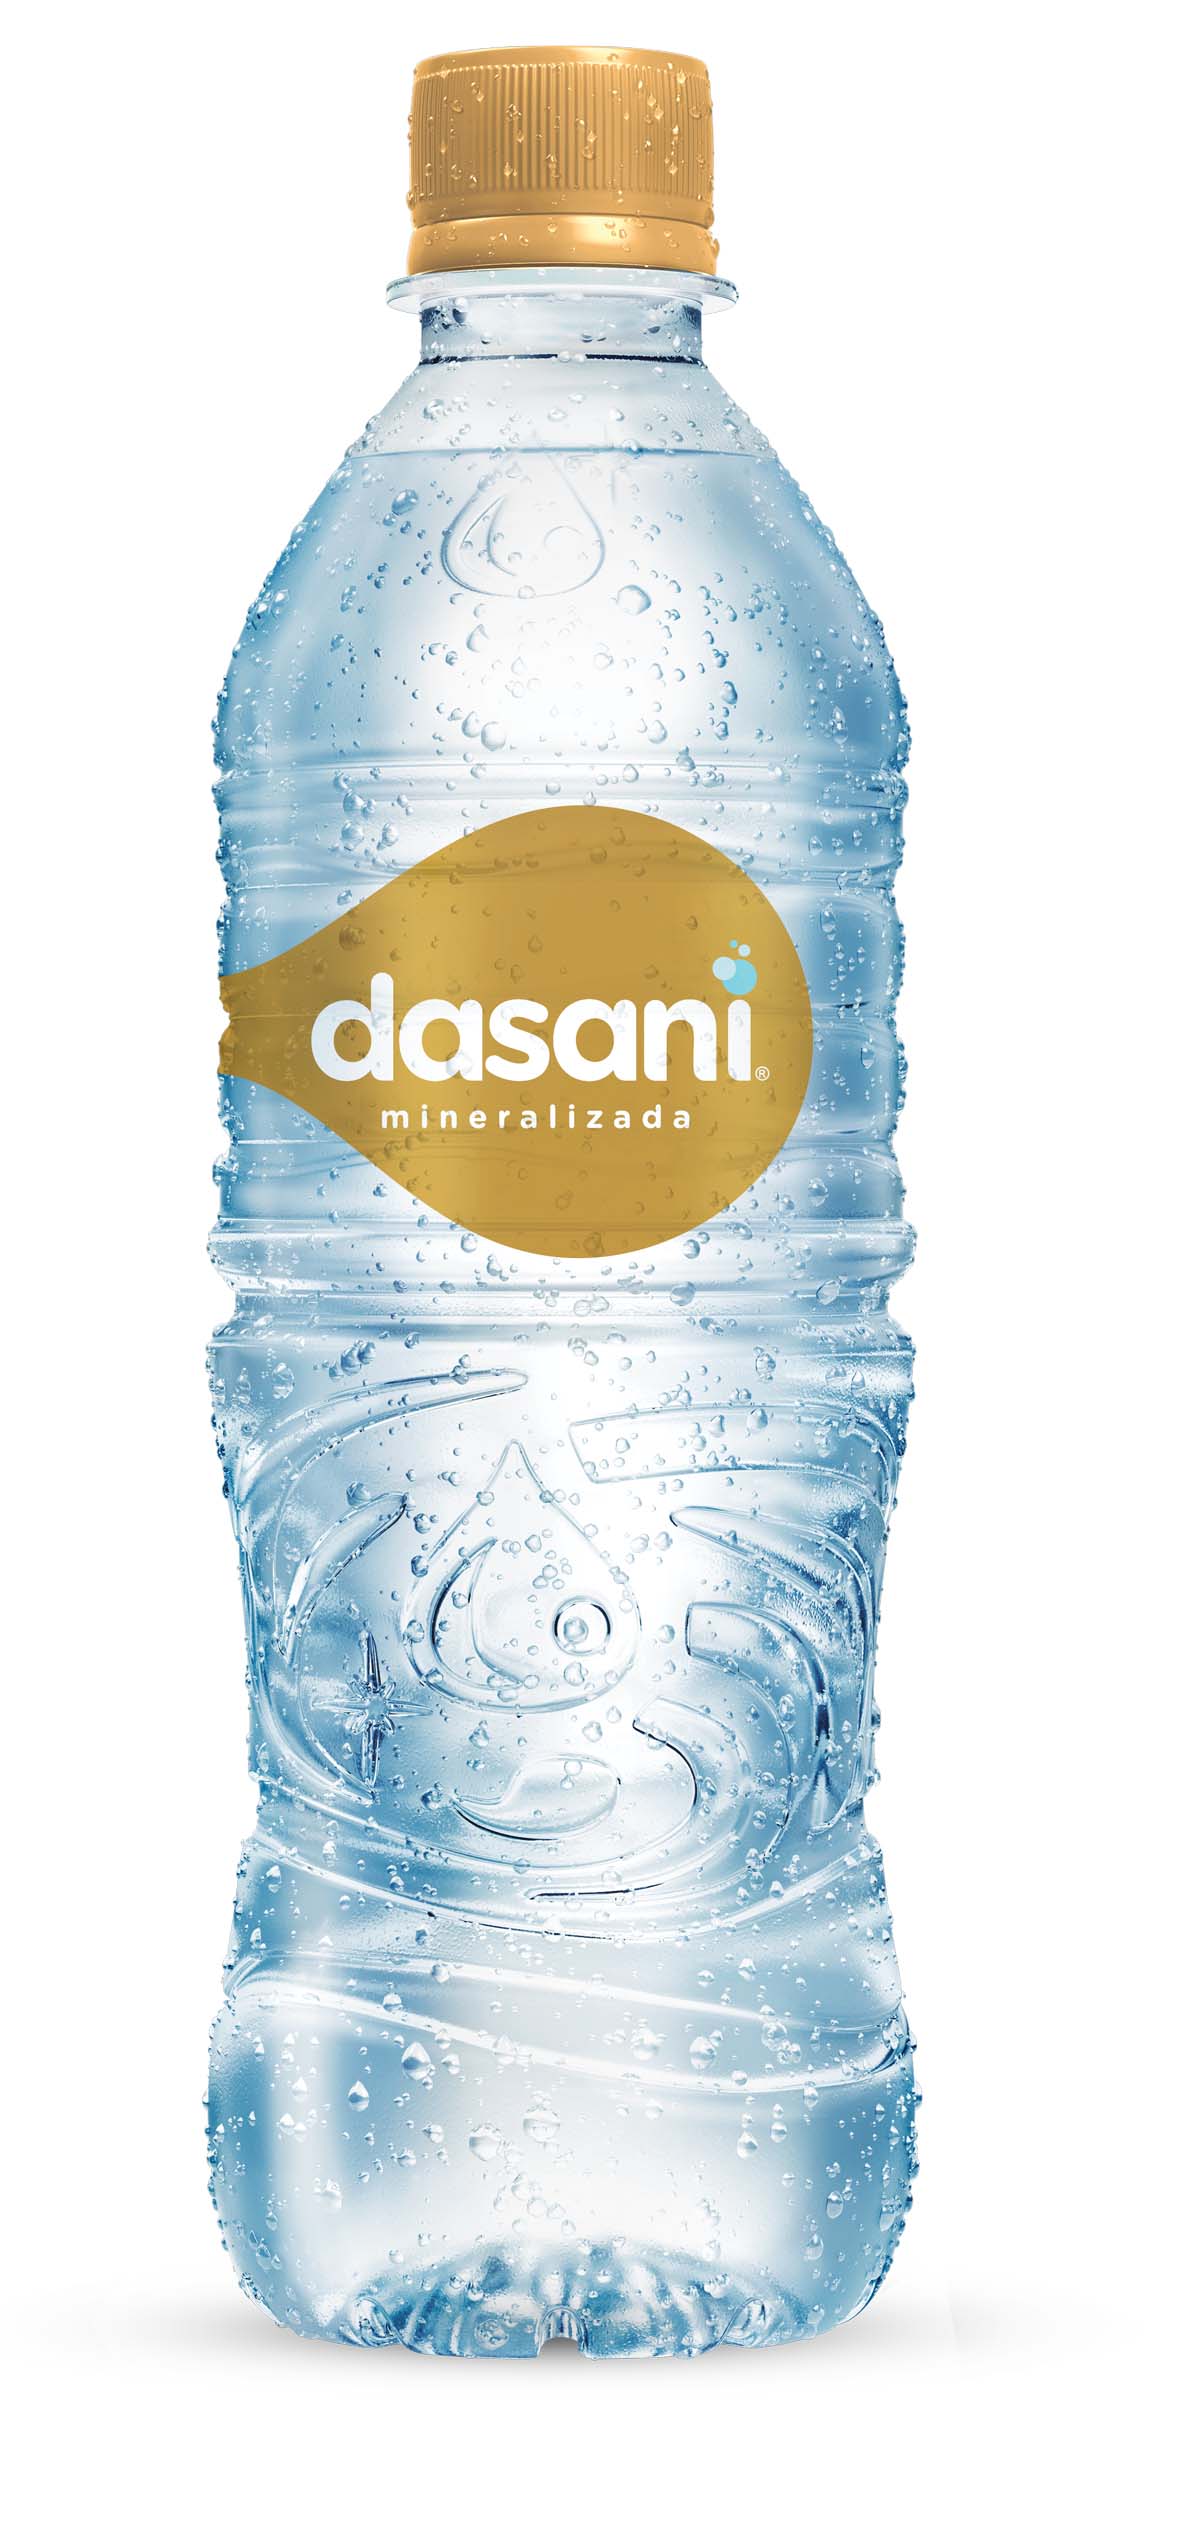 Botella de Dasani Mineralizada 500mL